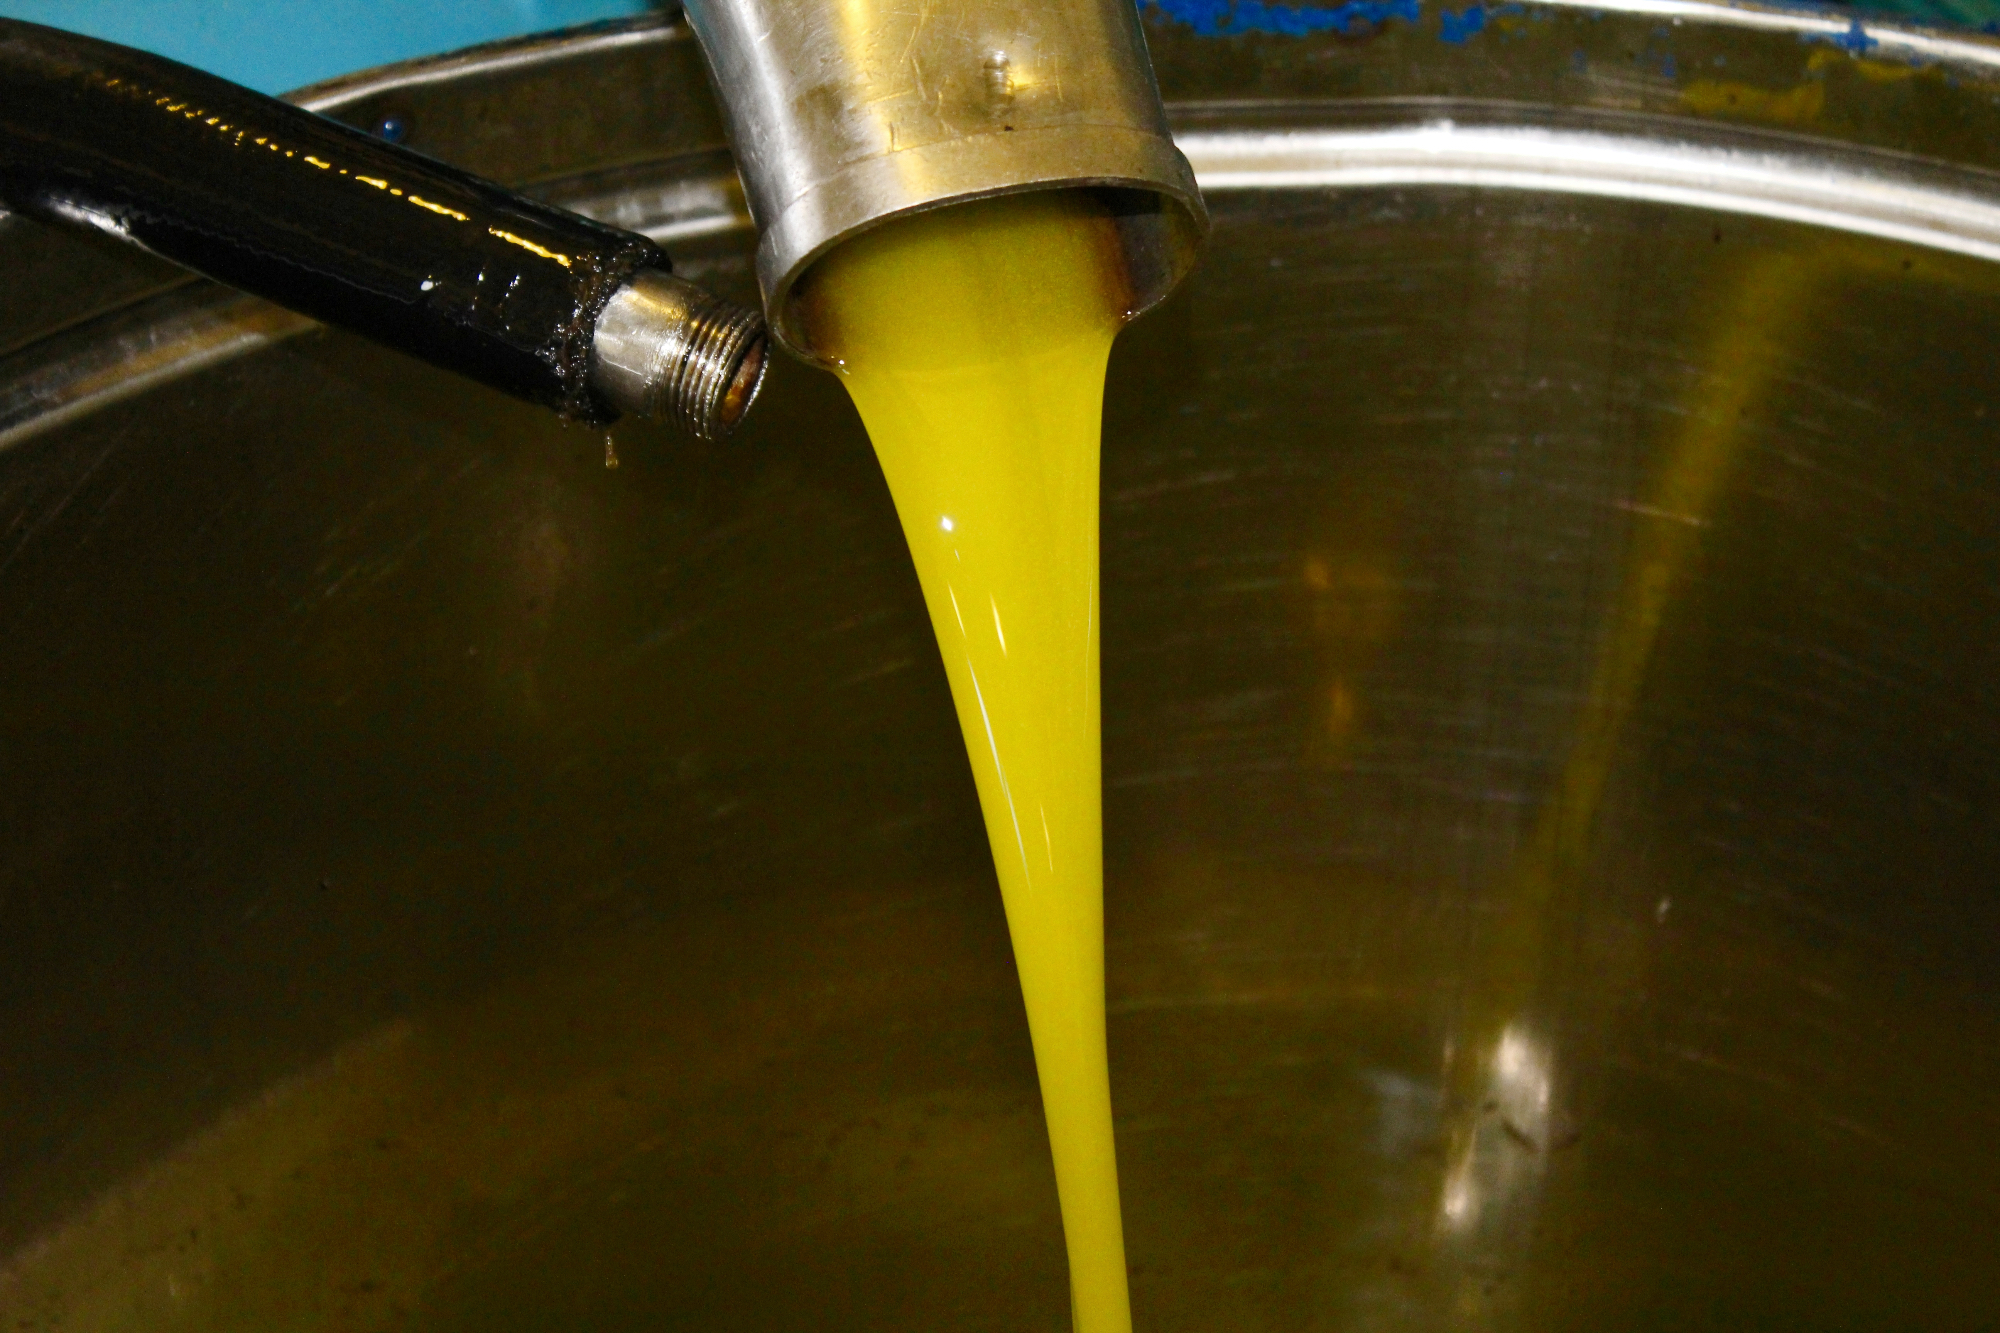 Olivno olje nas je resnično presenetilo s svojim okusom